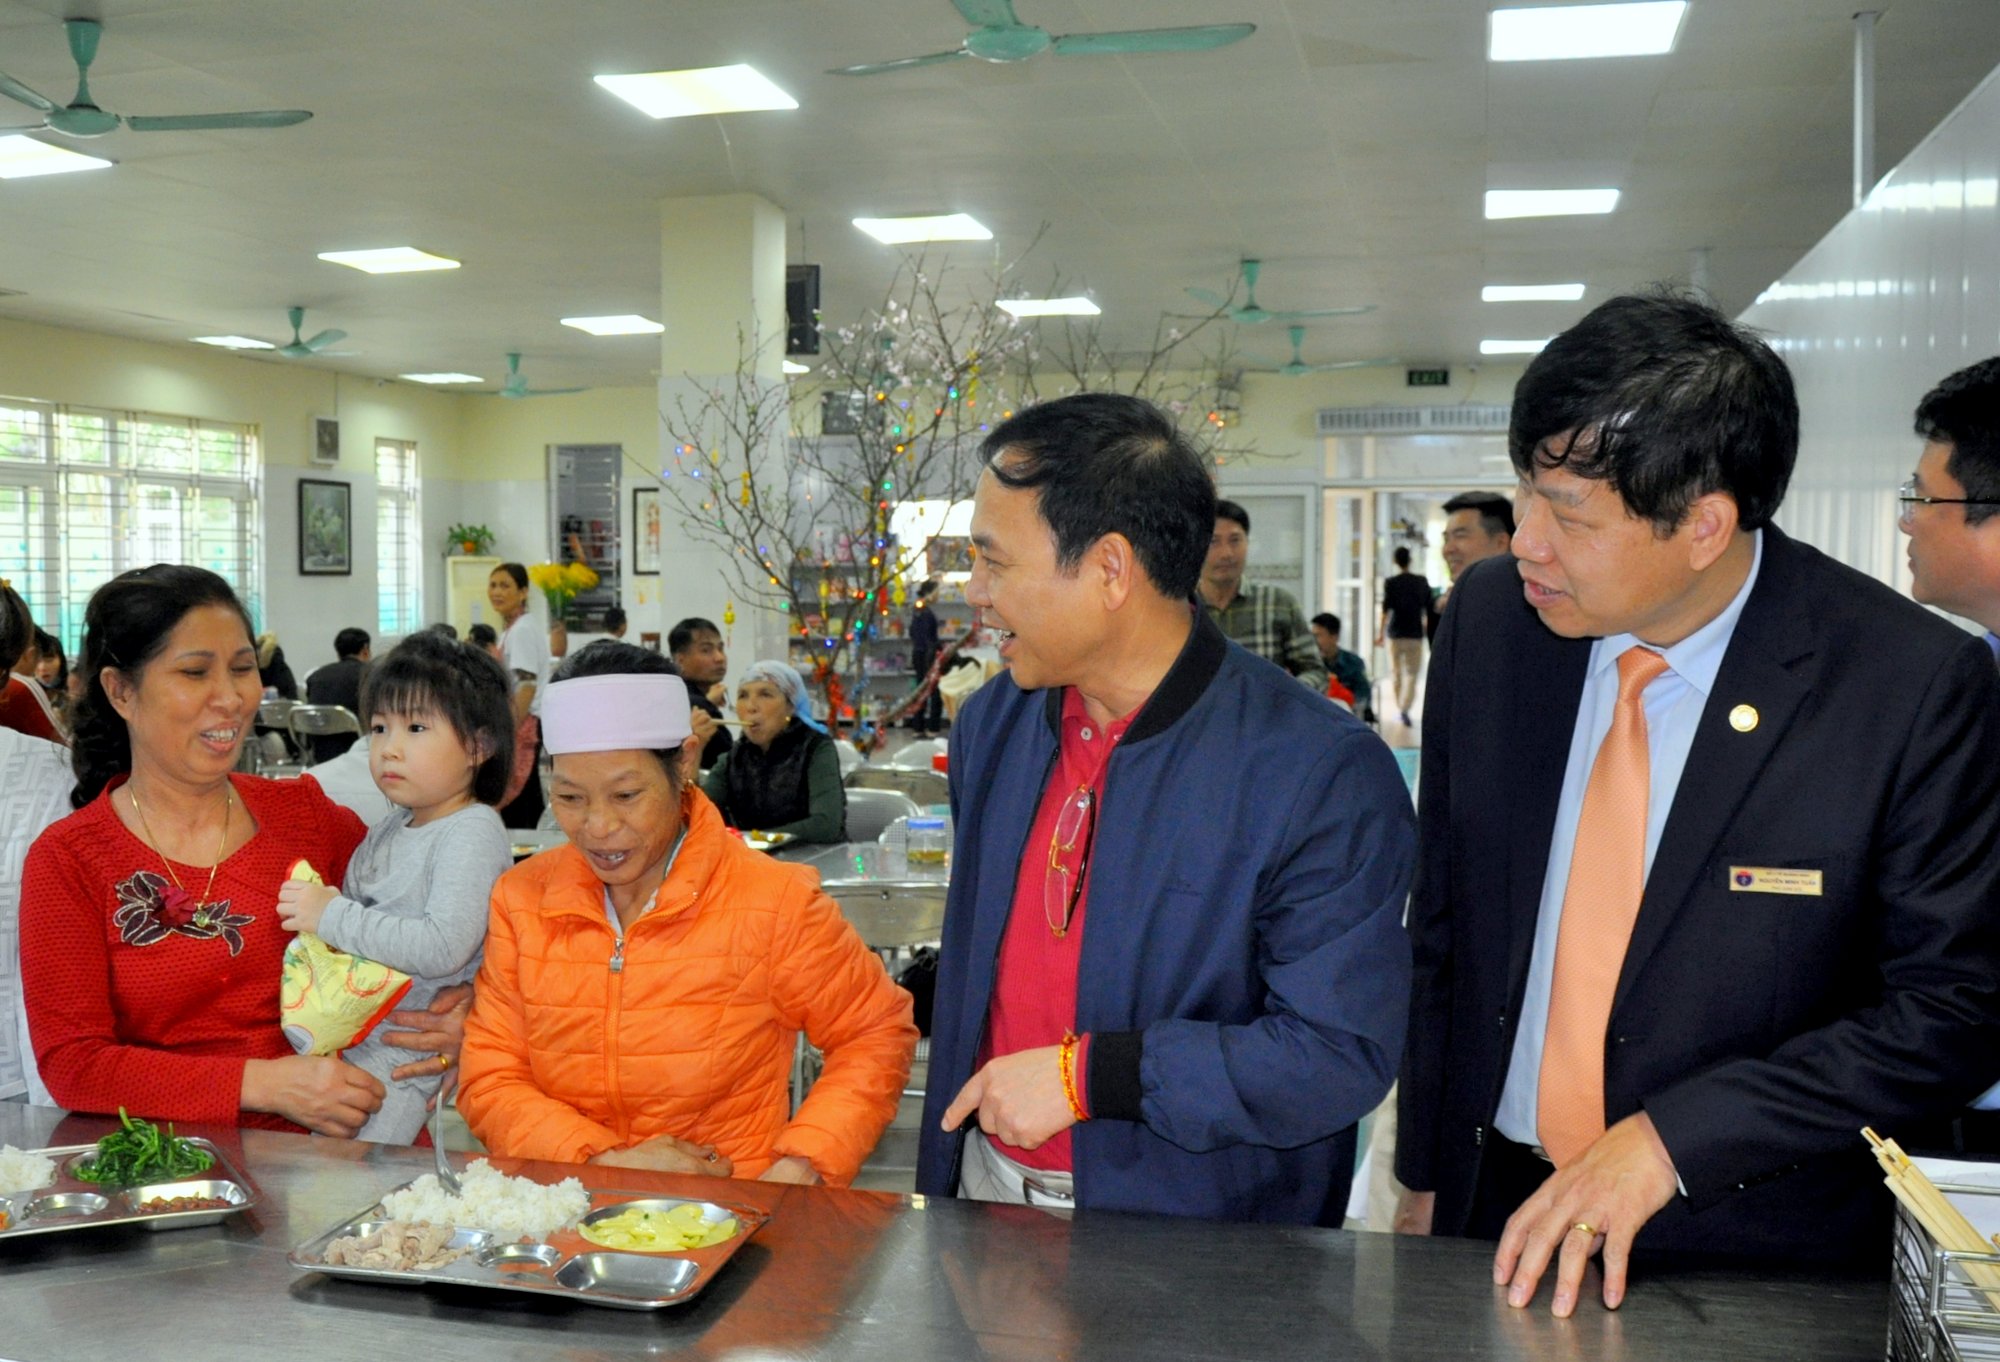 Đồng chí Đặng Huy Hậu, Phó Chủ tịch Thường trực UBND tỉnh tới thăm khu nhà ăn, nhà bếp của Bệnh viện Sản Nhi Quảng Ninh và trò chuyện, thăm hỏi các bệnh nhân, người nhà bệnh nhân.